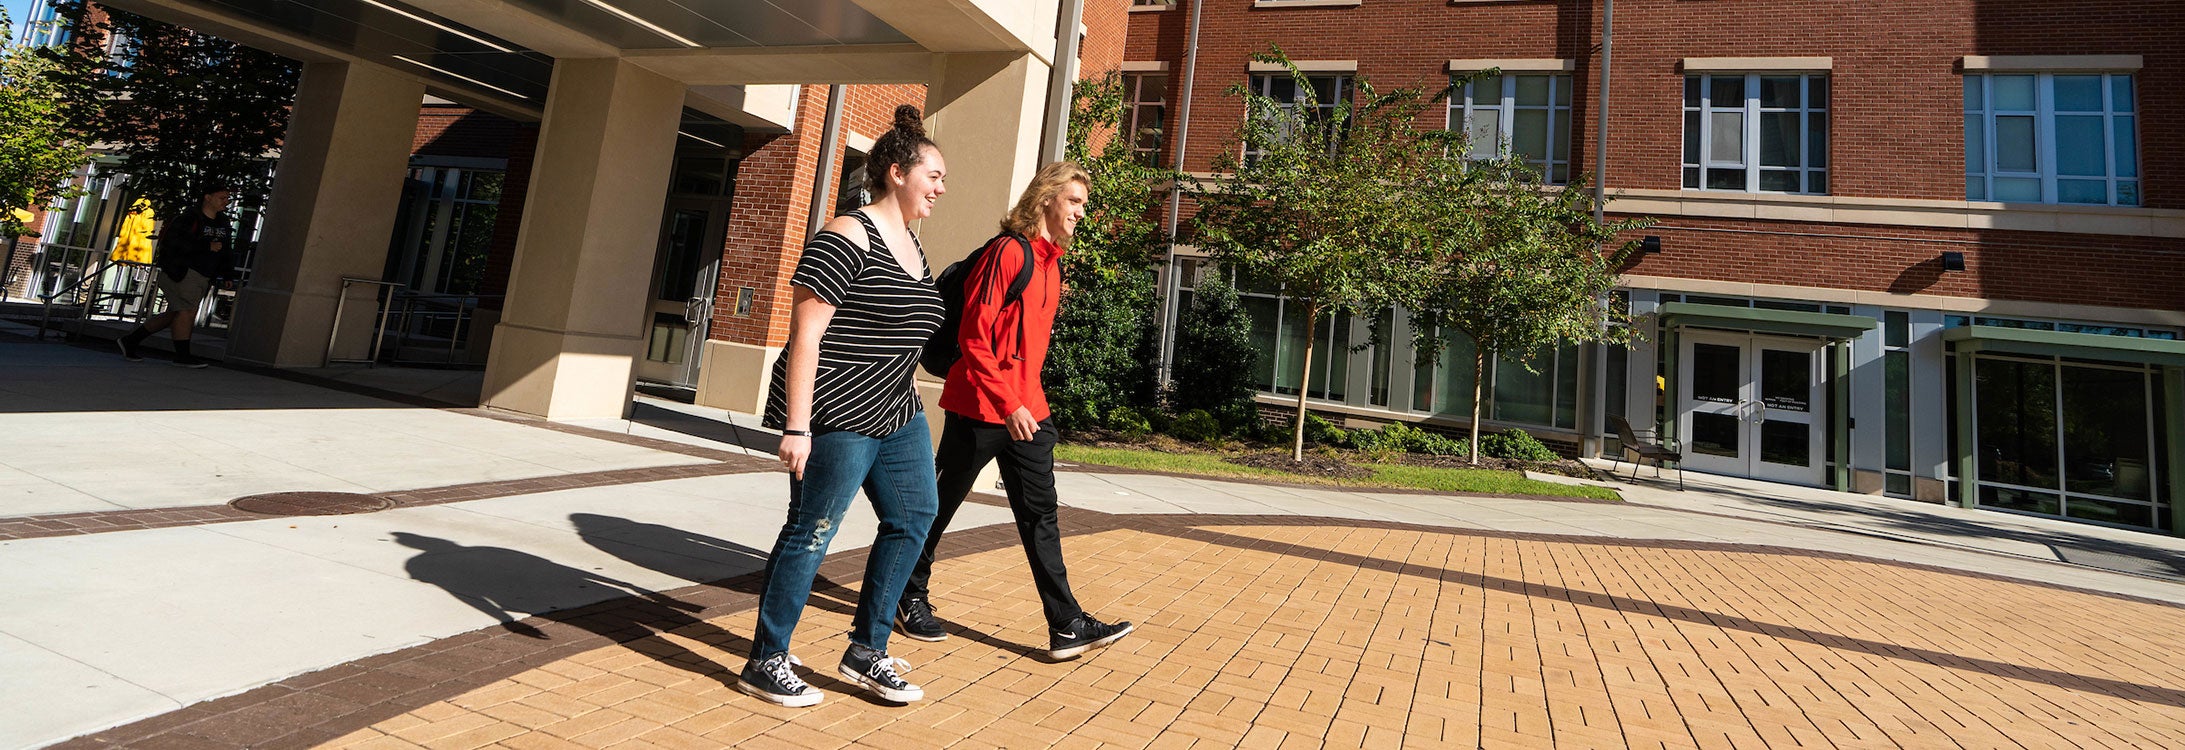 Residential Scholars Samantha Willard and Brandon Fellenstein walk together on ECU’s campus. (Photo by Cliff Hollis)